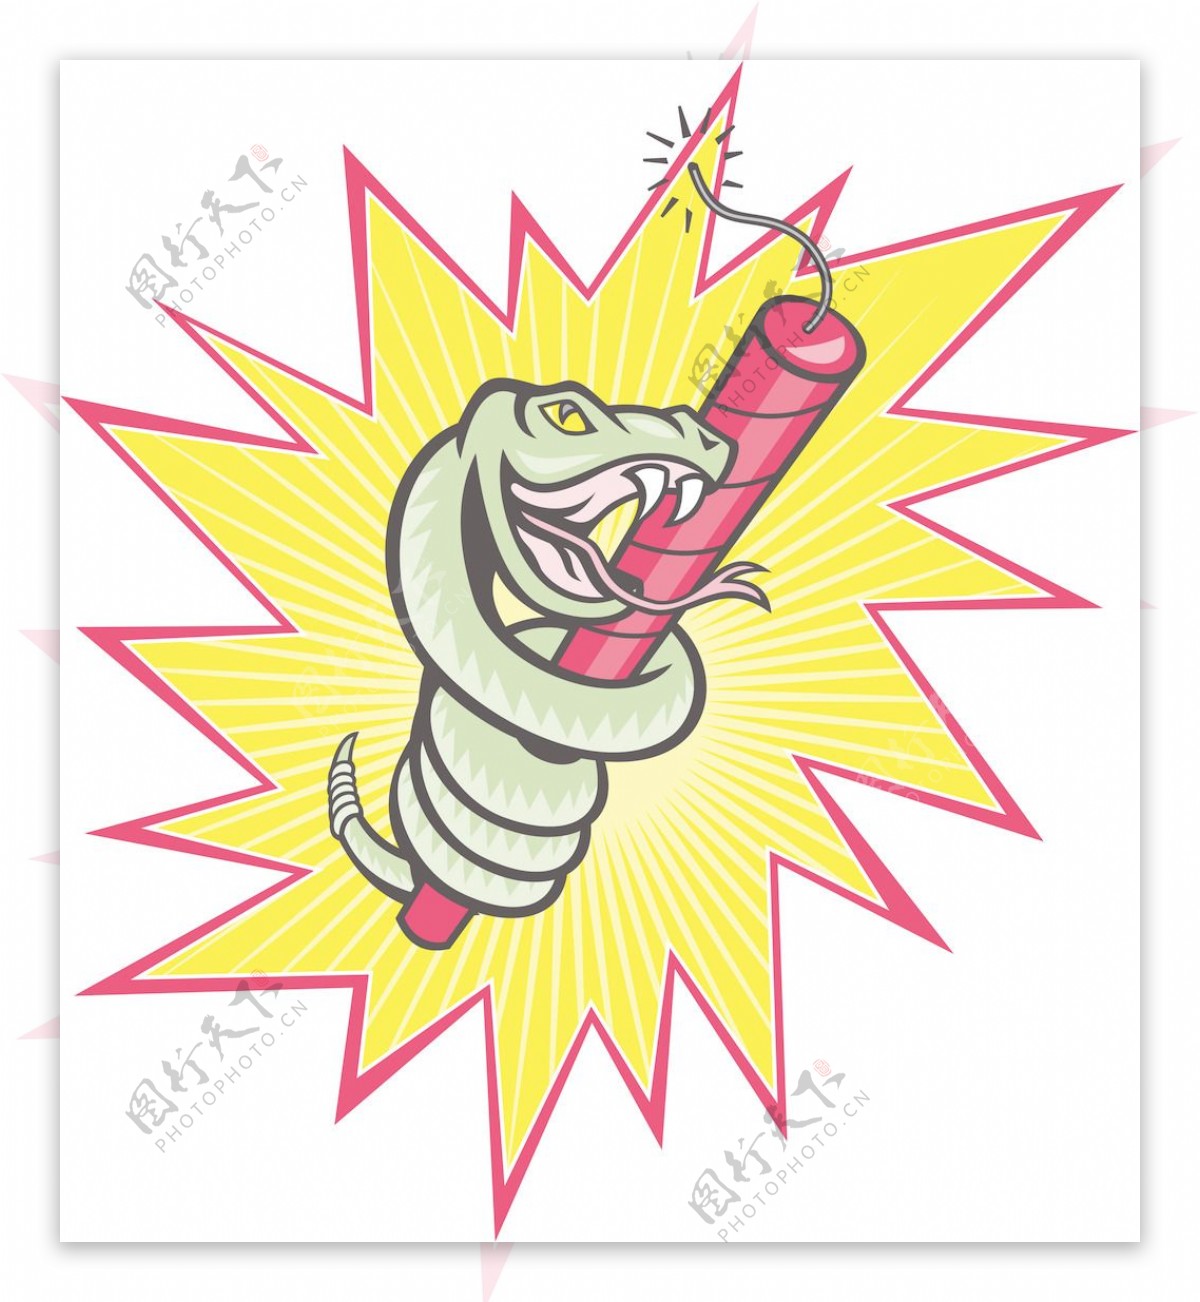 响尾蛇卷炸药的卡通